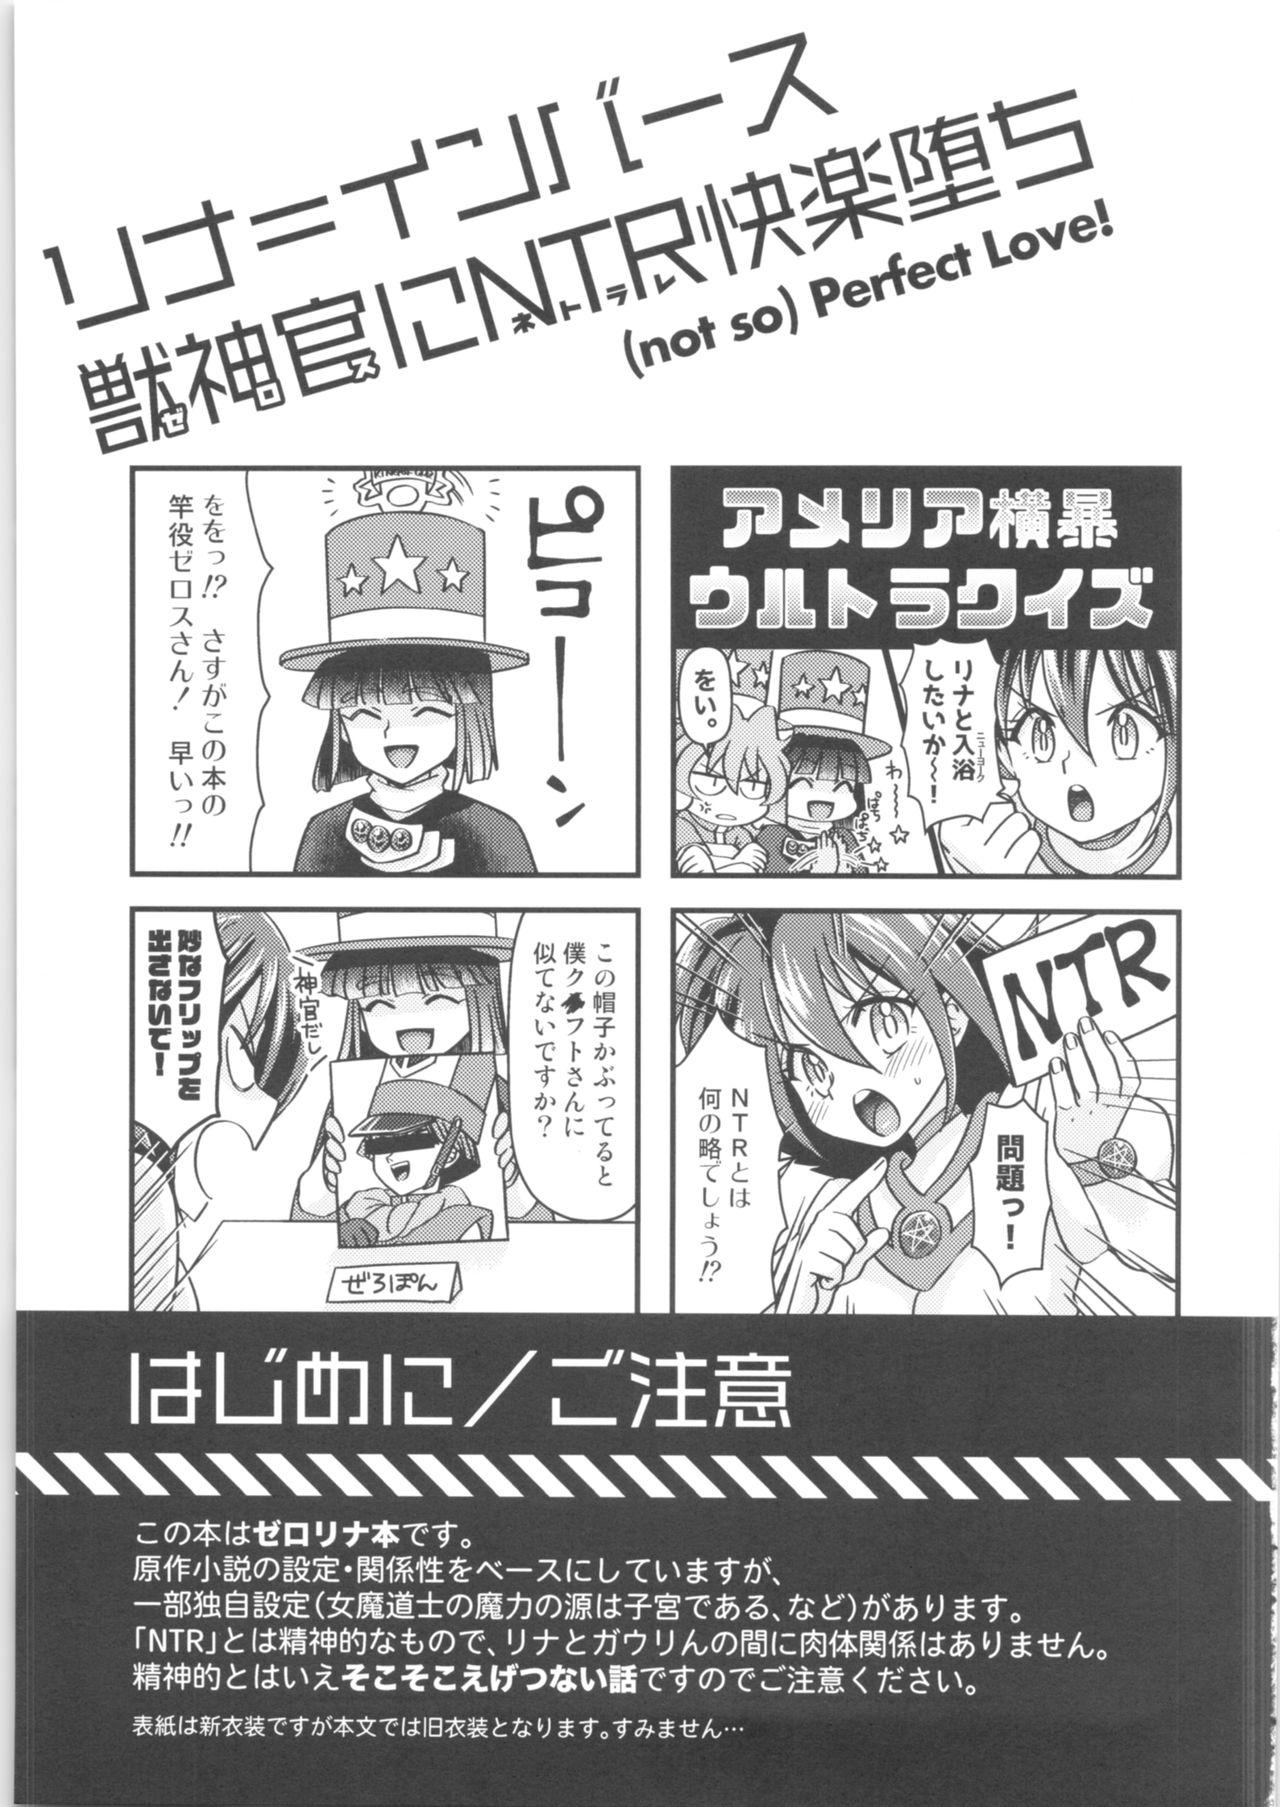 Blond Lina Inverse Juu Shinkan ni NTR Kairaku Ochi - Slayers Chica - Page 2